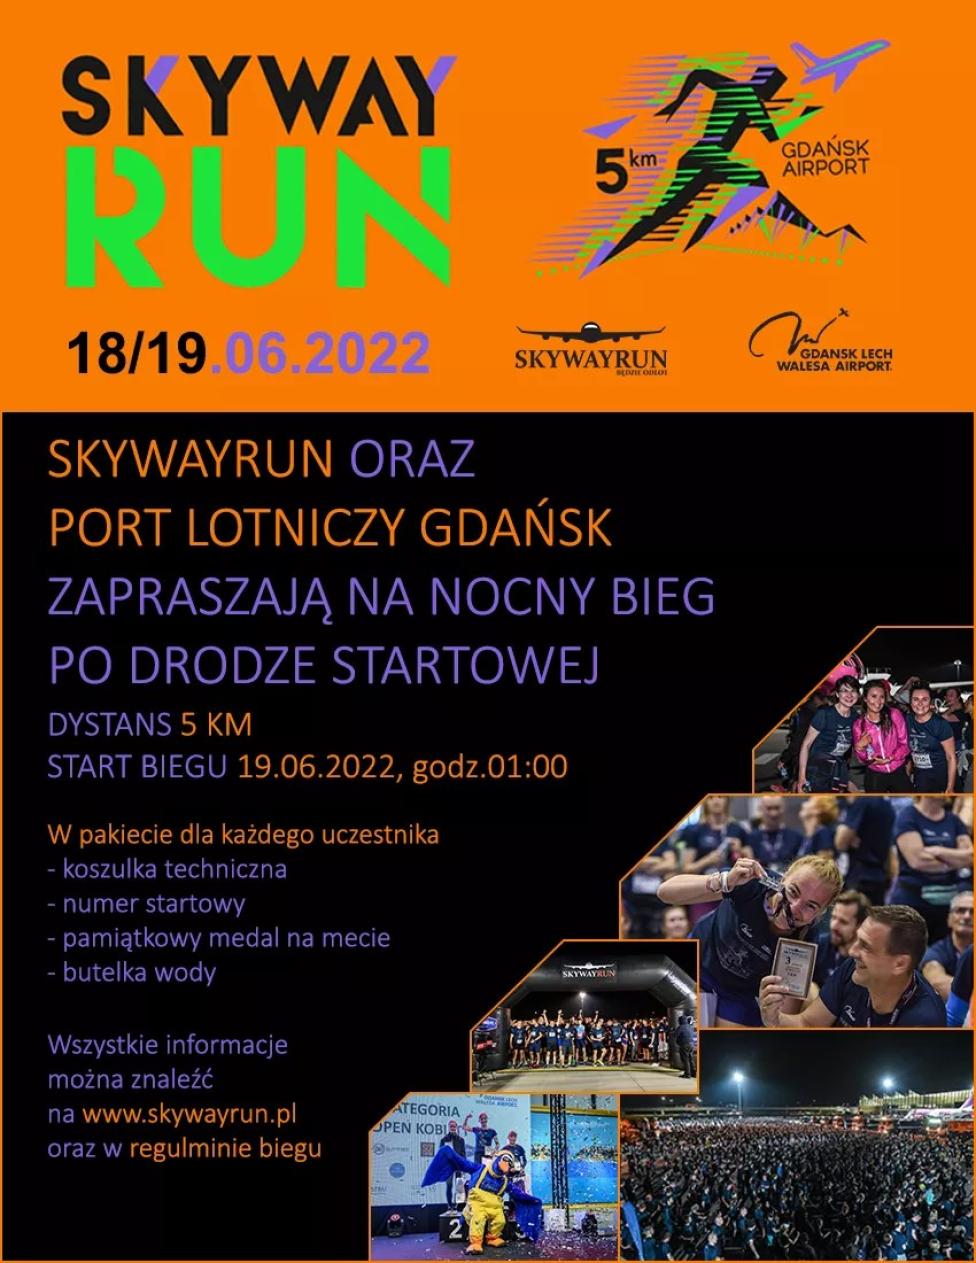 Skywayrun Gdańsk Airport 2022 (fot. airport.gdansk.pl)